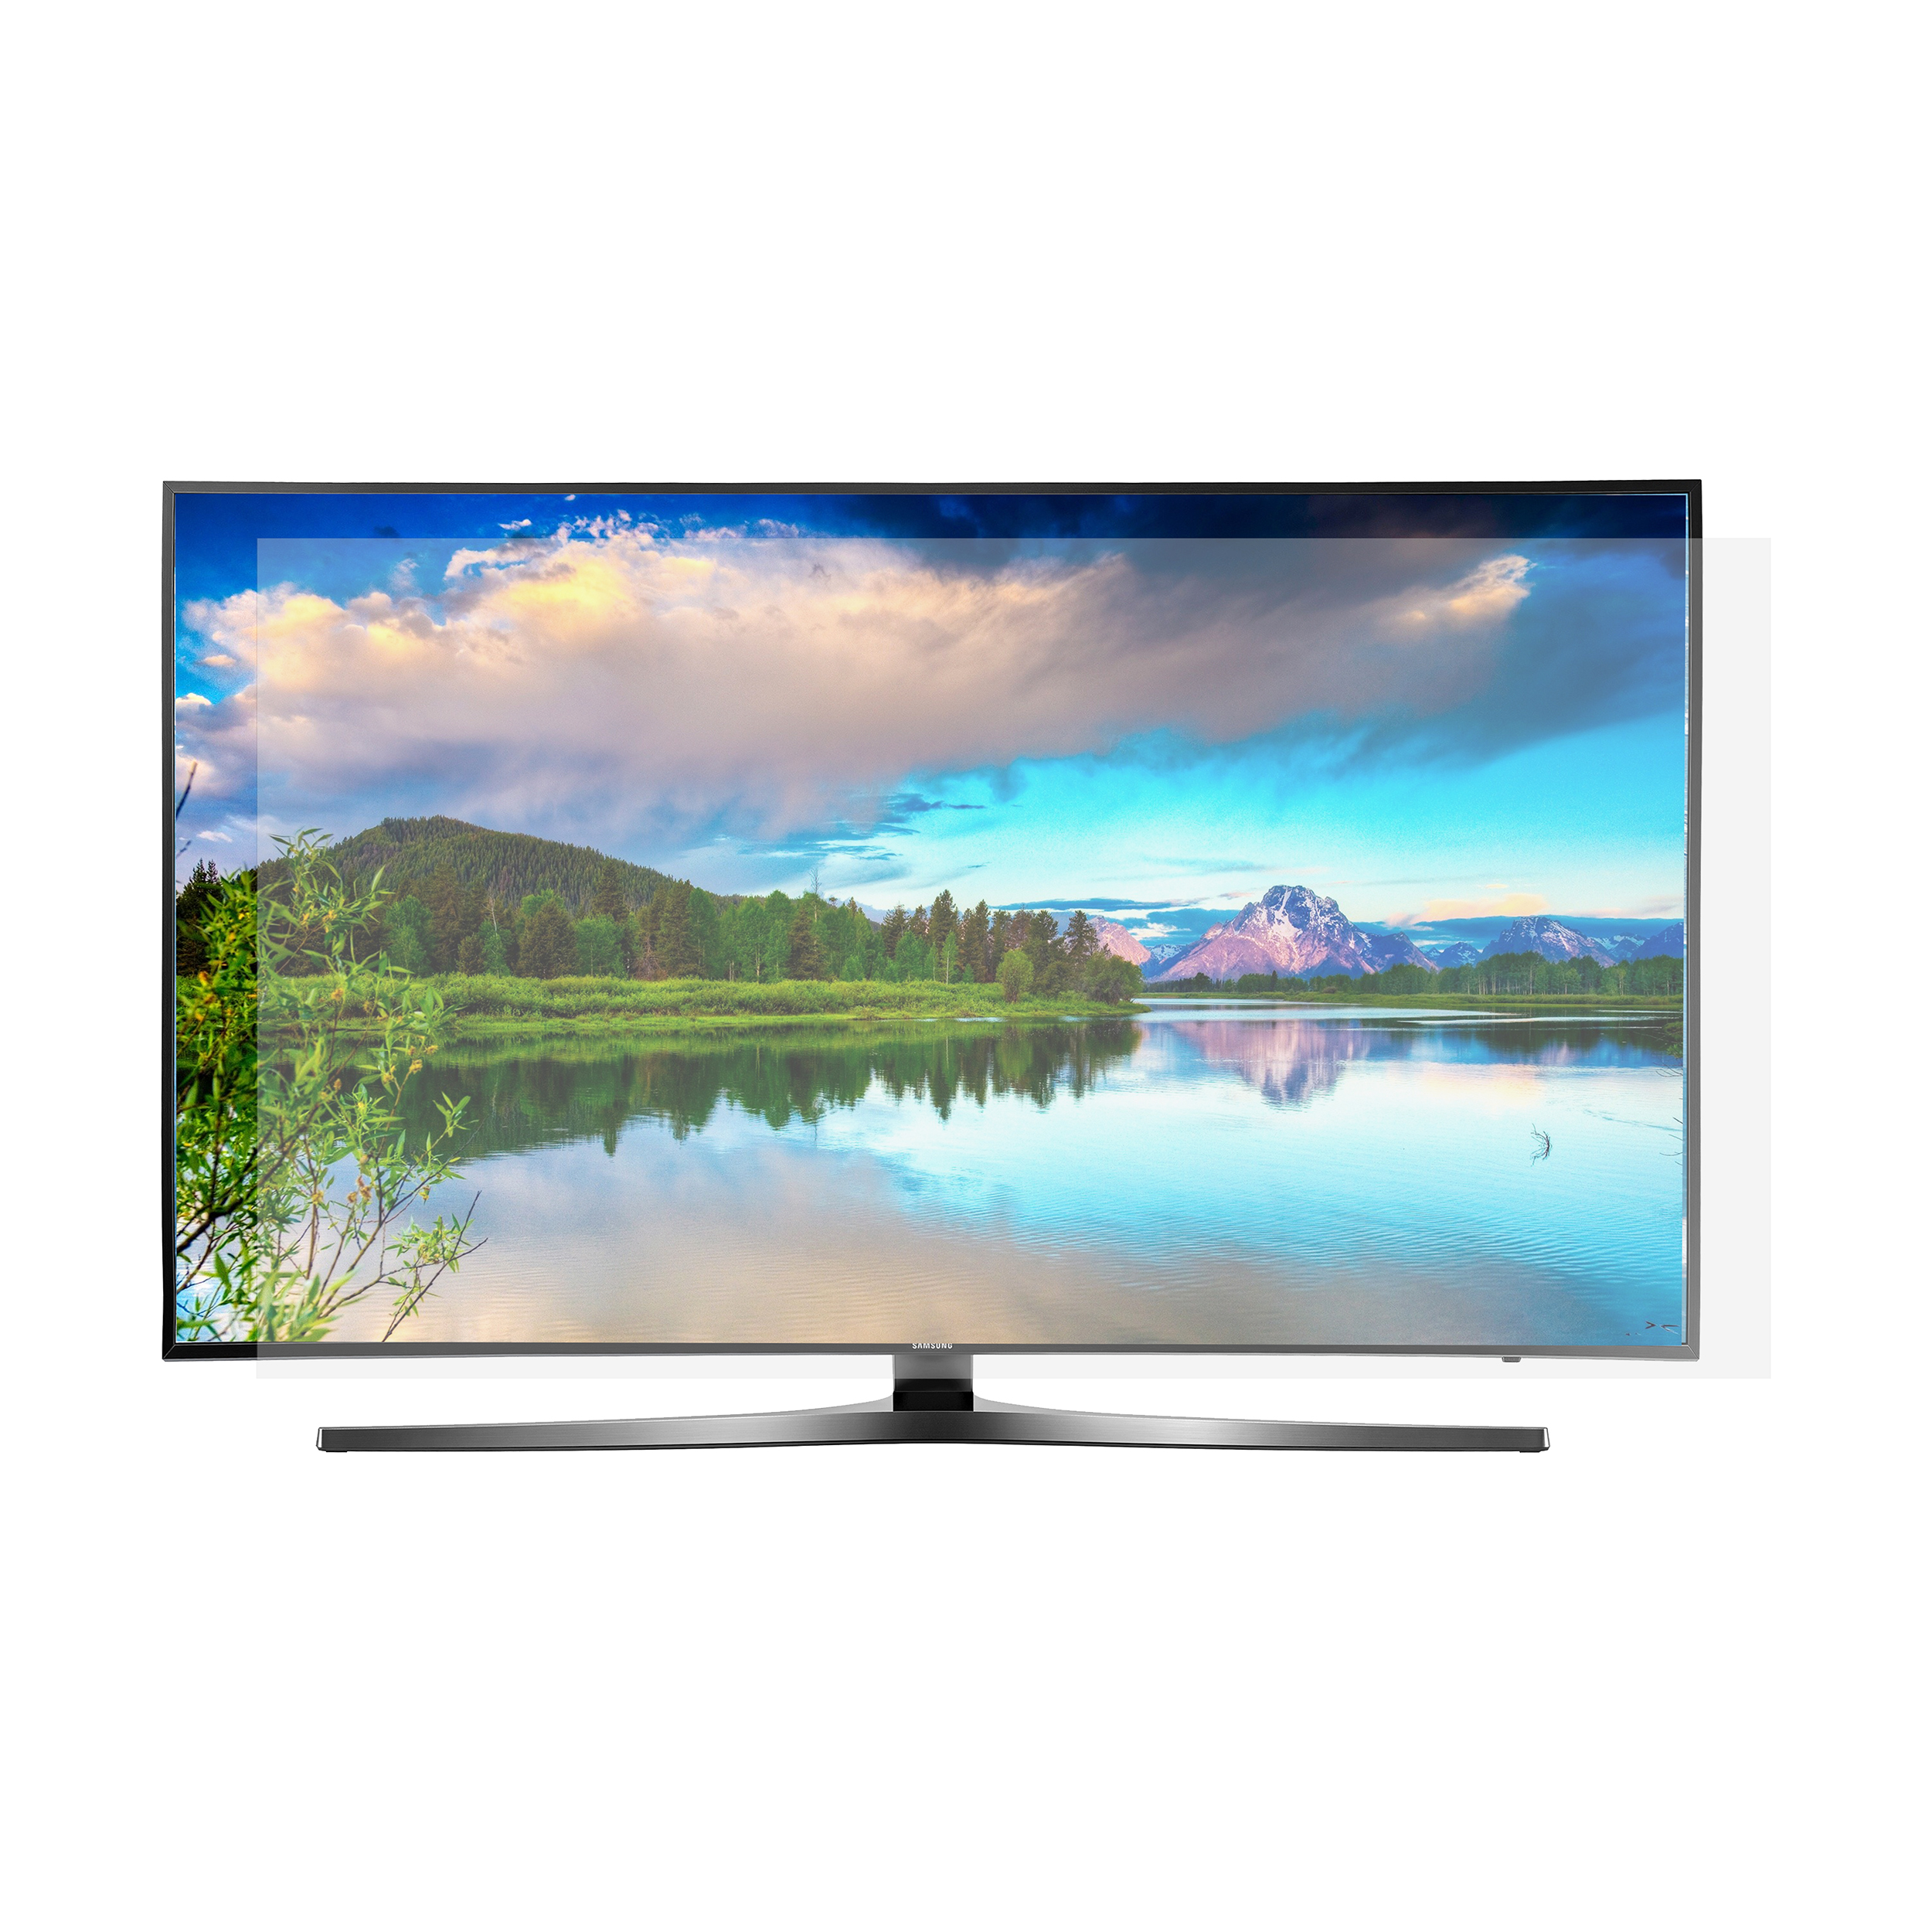 محافظ صفحه نمایش تلویزیون مدل SP-49 مناسب برای تلویزیون های 49 اینچی